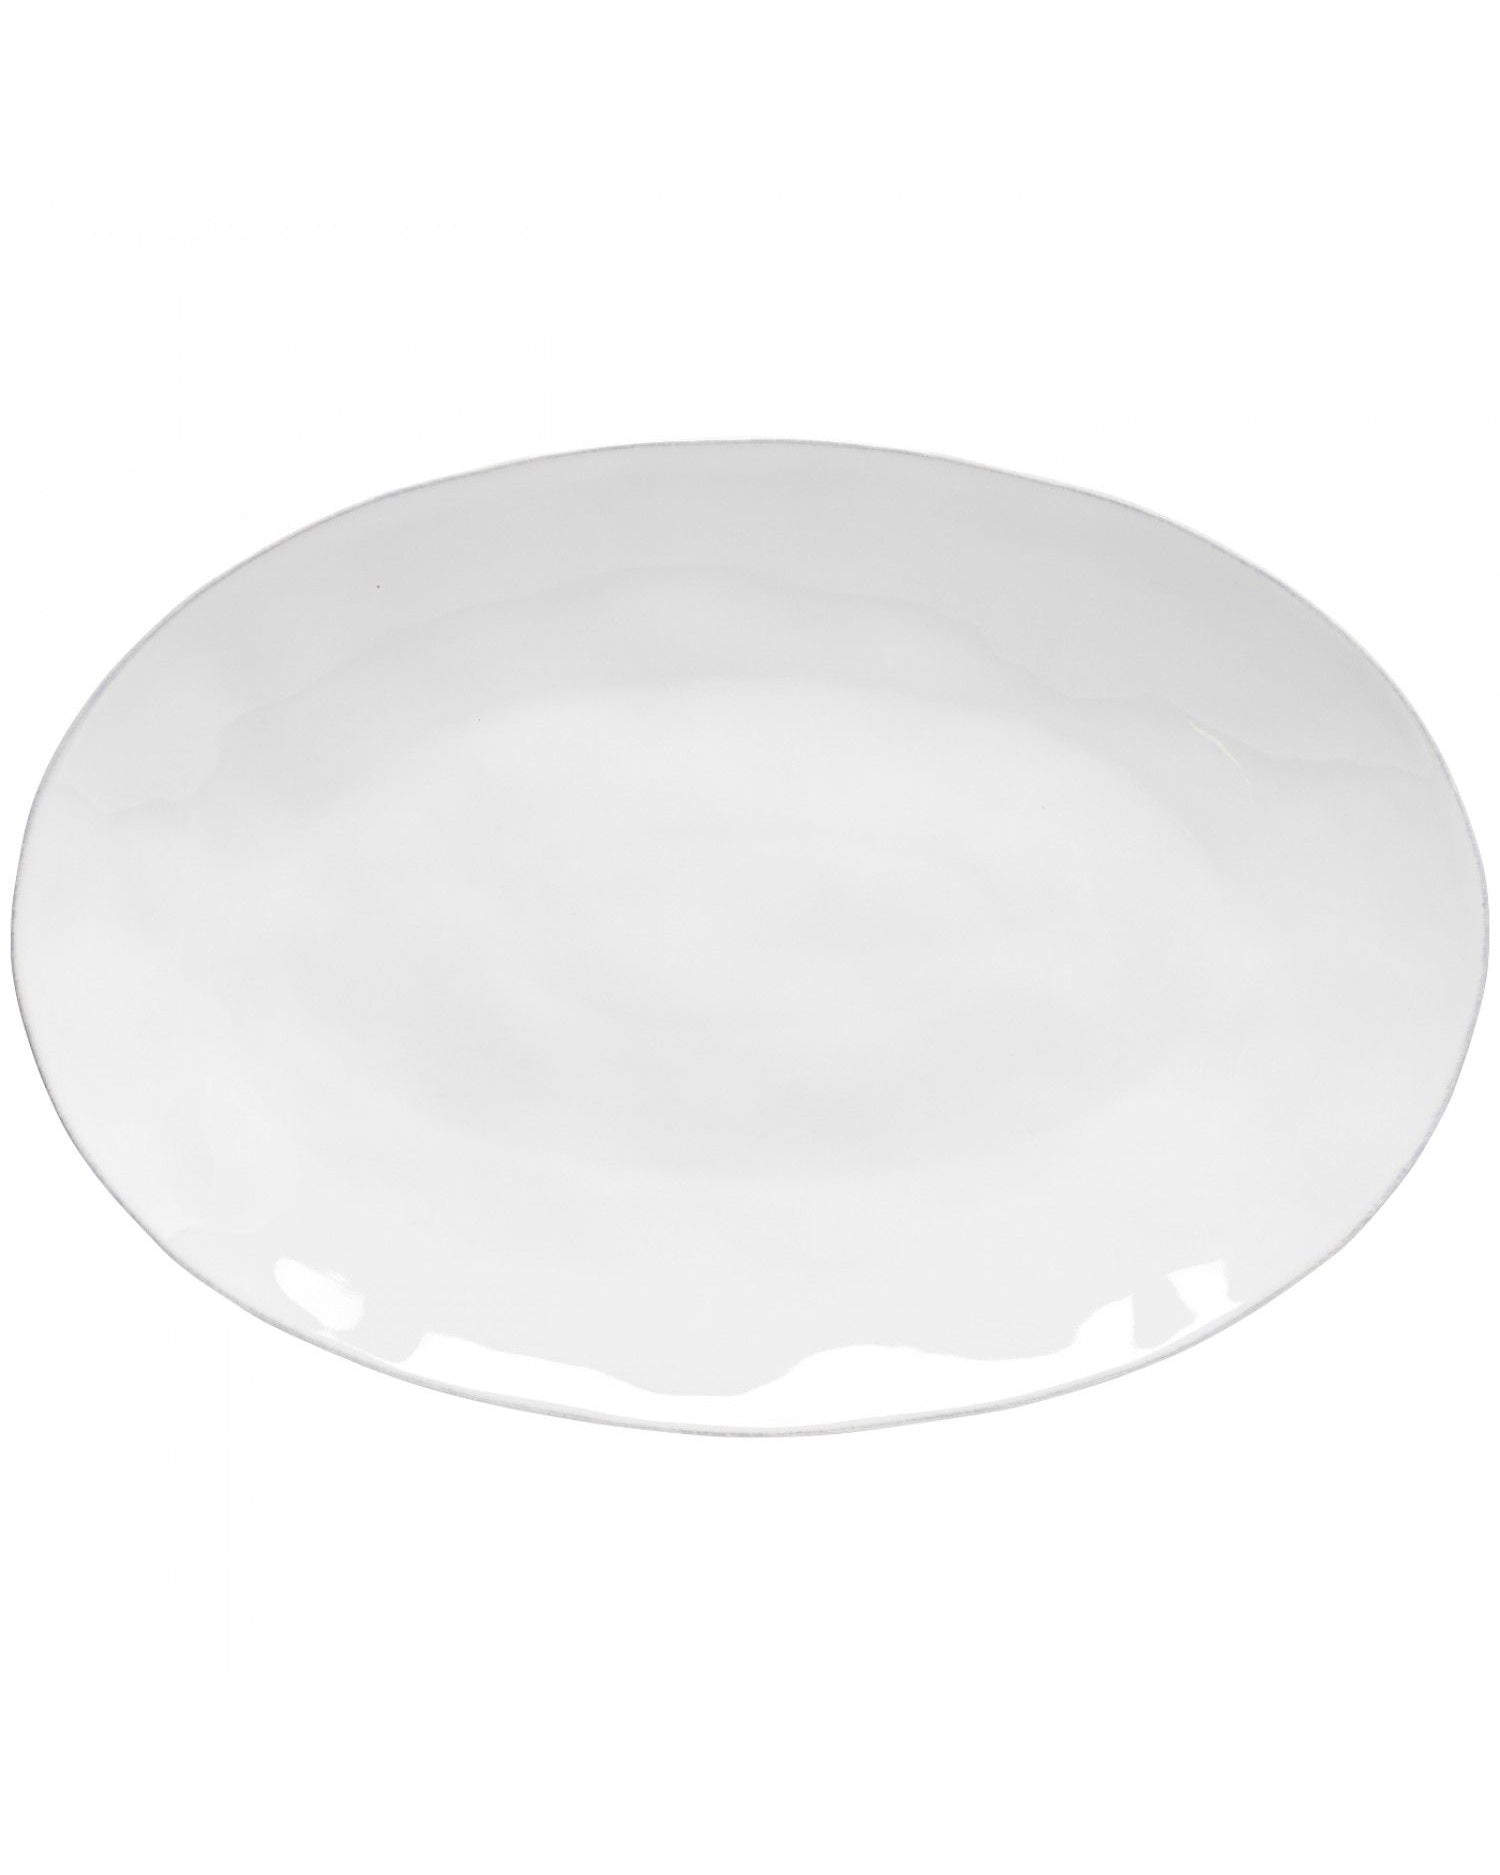 Costa Nova Livia Oval Platter White 45cm